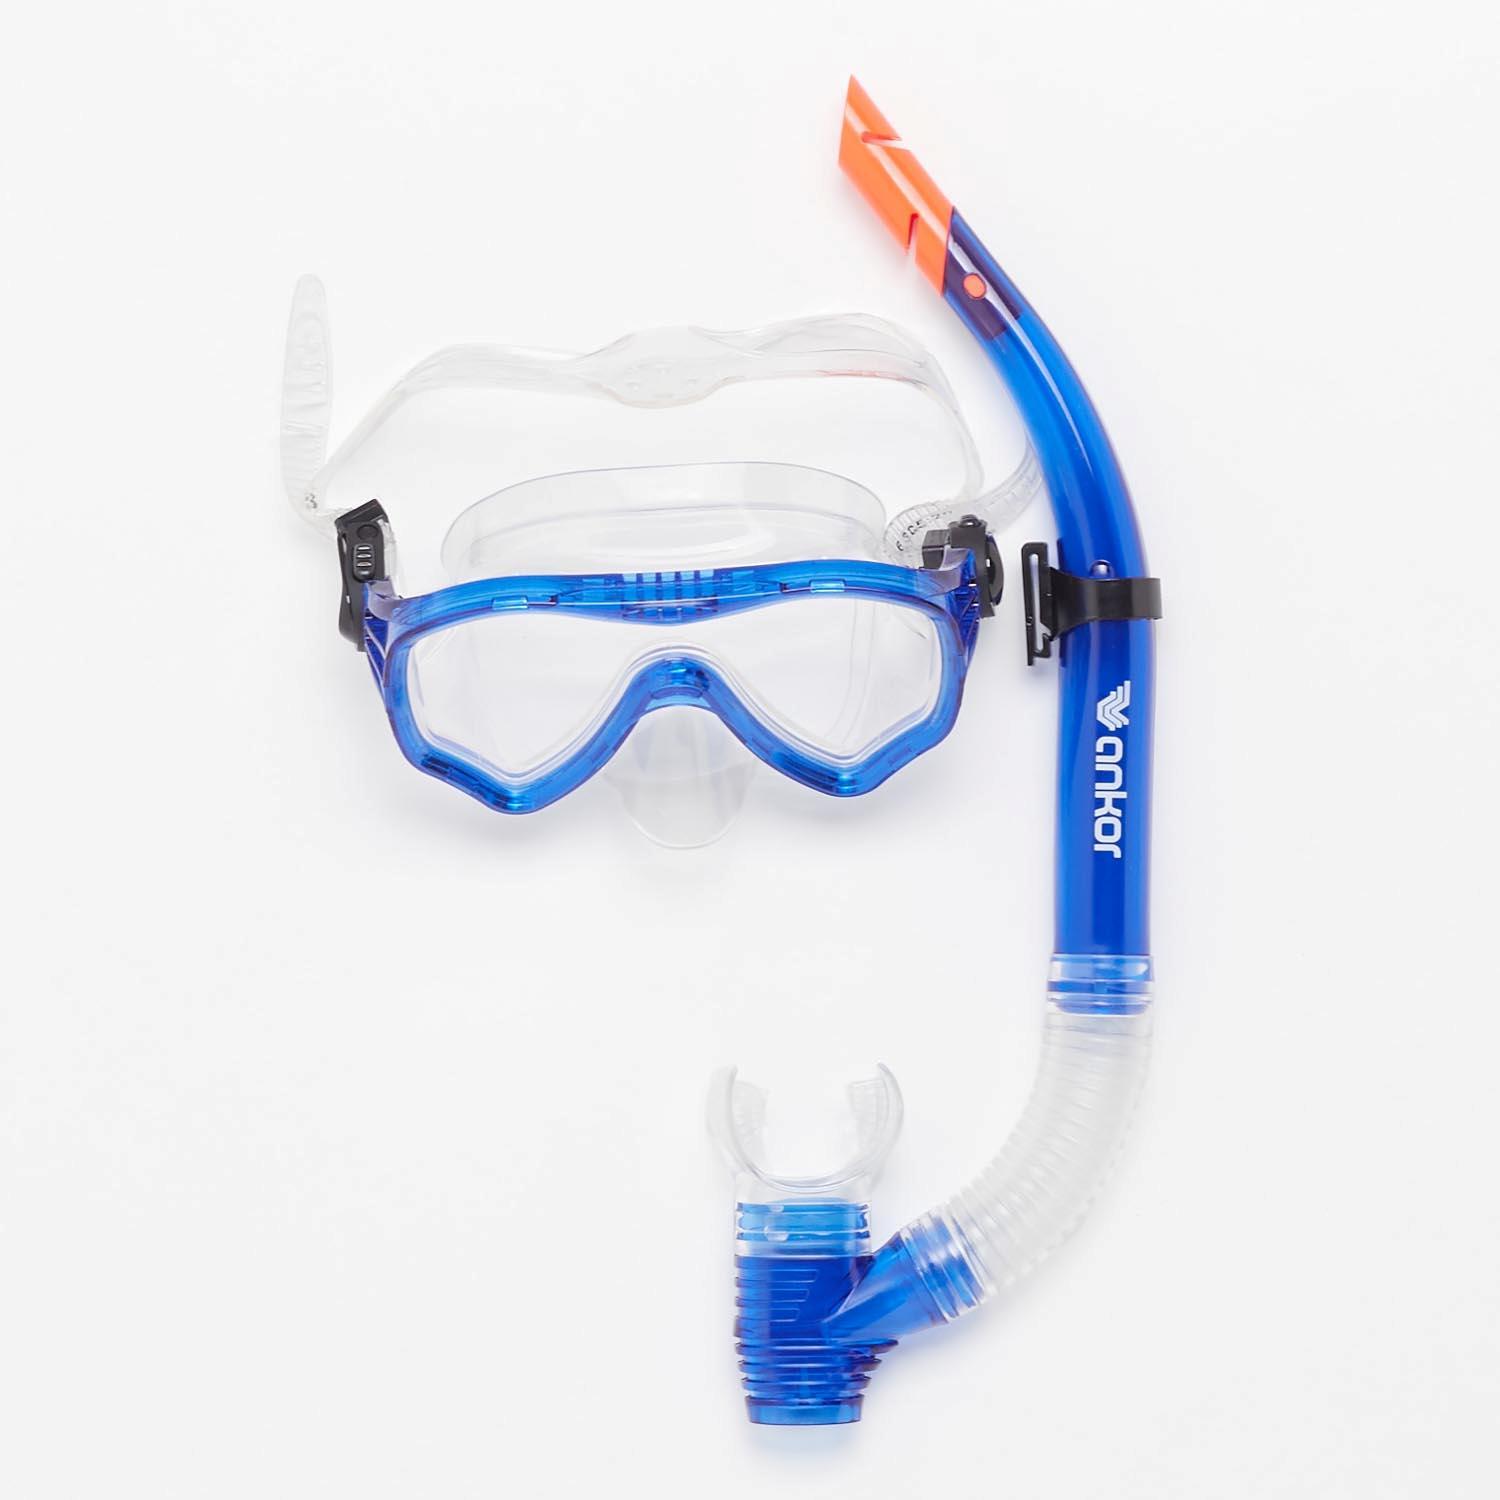 Set de Plongée Masque + Tube Ankor - Bleu - Accessoires de plongée sports taille UNICA